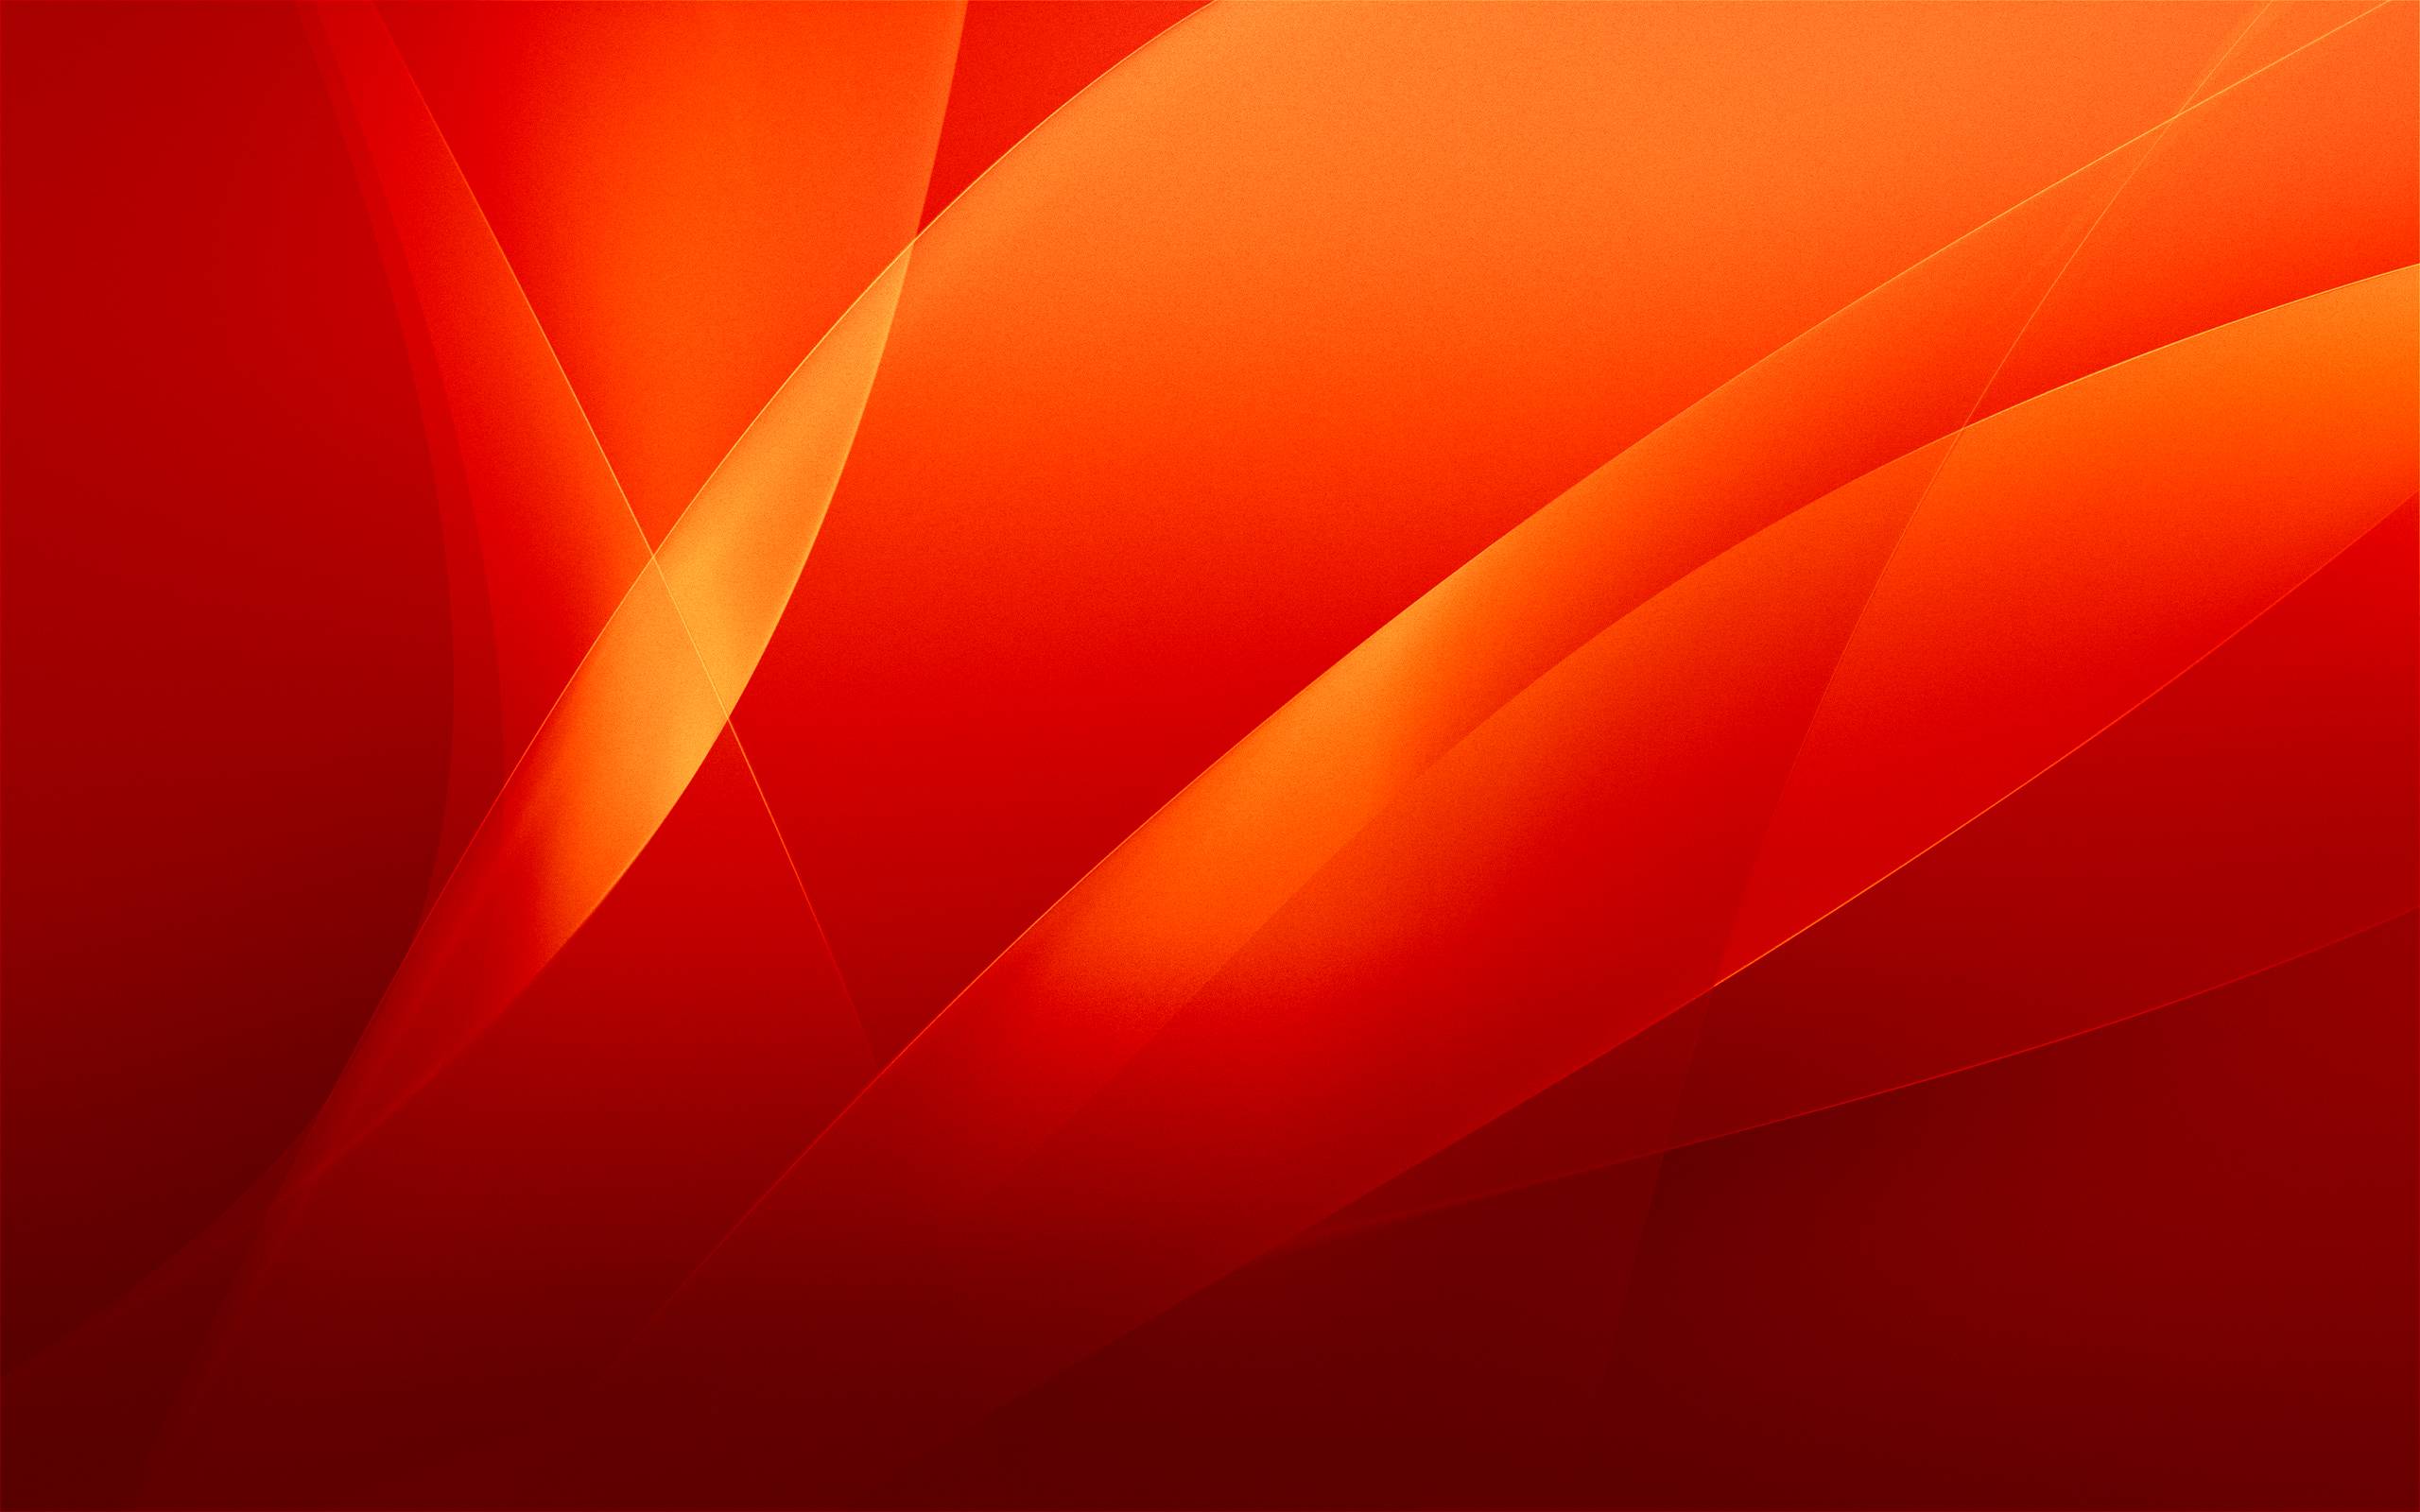 74+] Free Red Wallpaper - WallpaperSafari